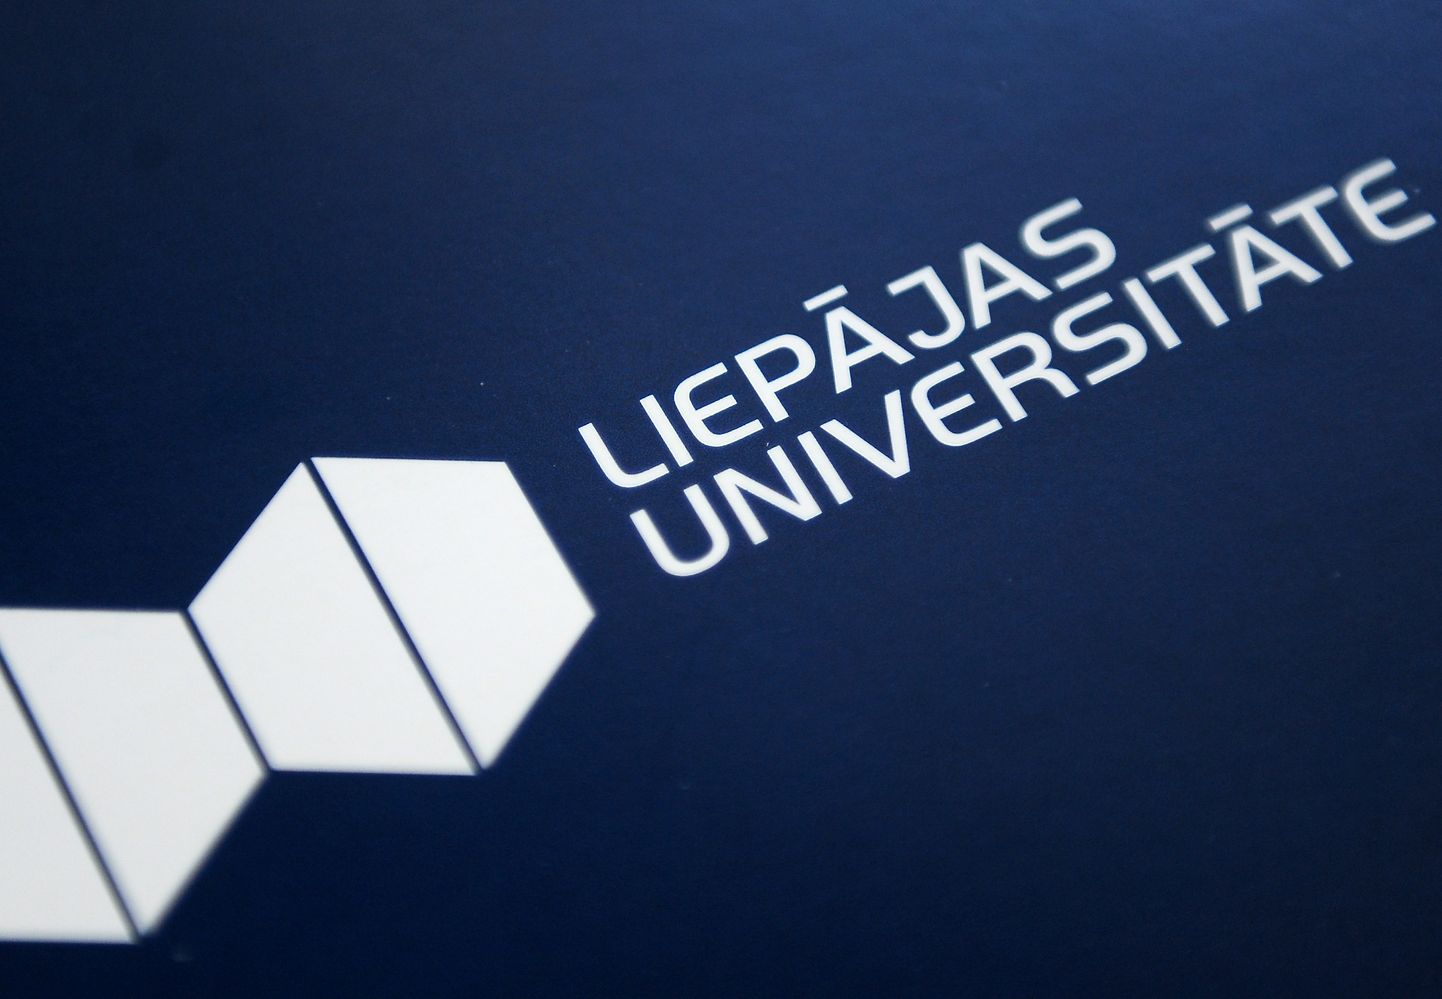 Liepājas Universitātes logo.